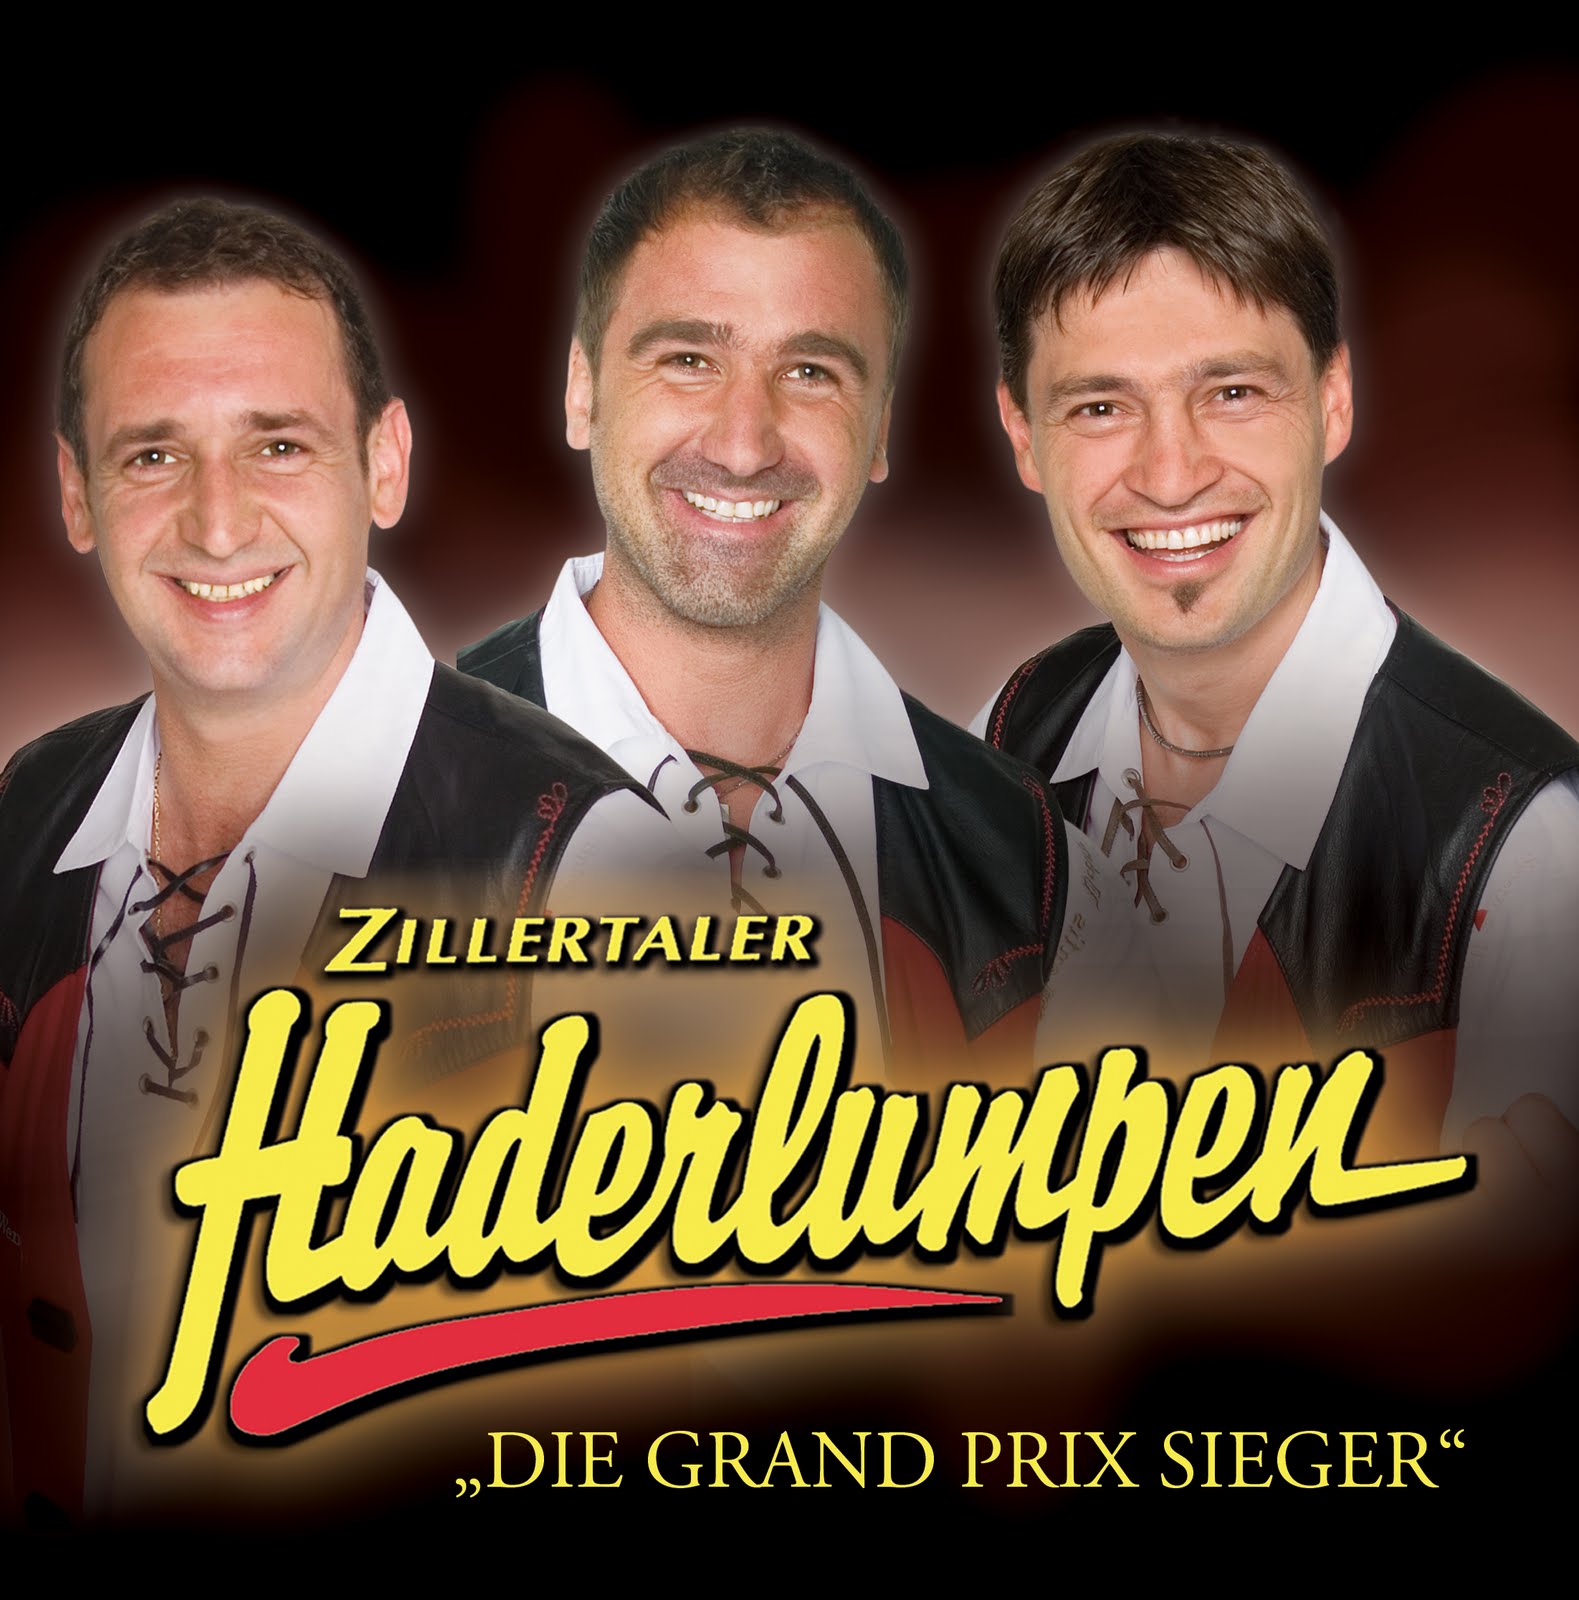 freunde: música alemã - deutsche musik: die zillertaler haderlumpen